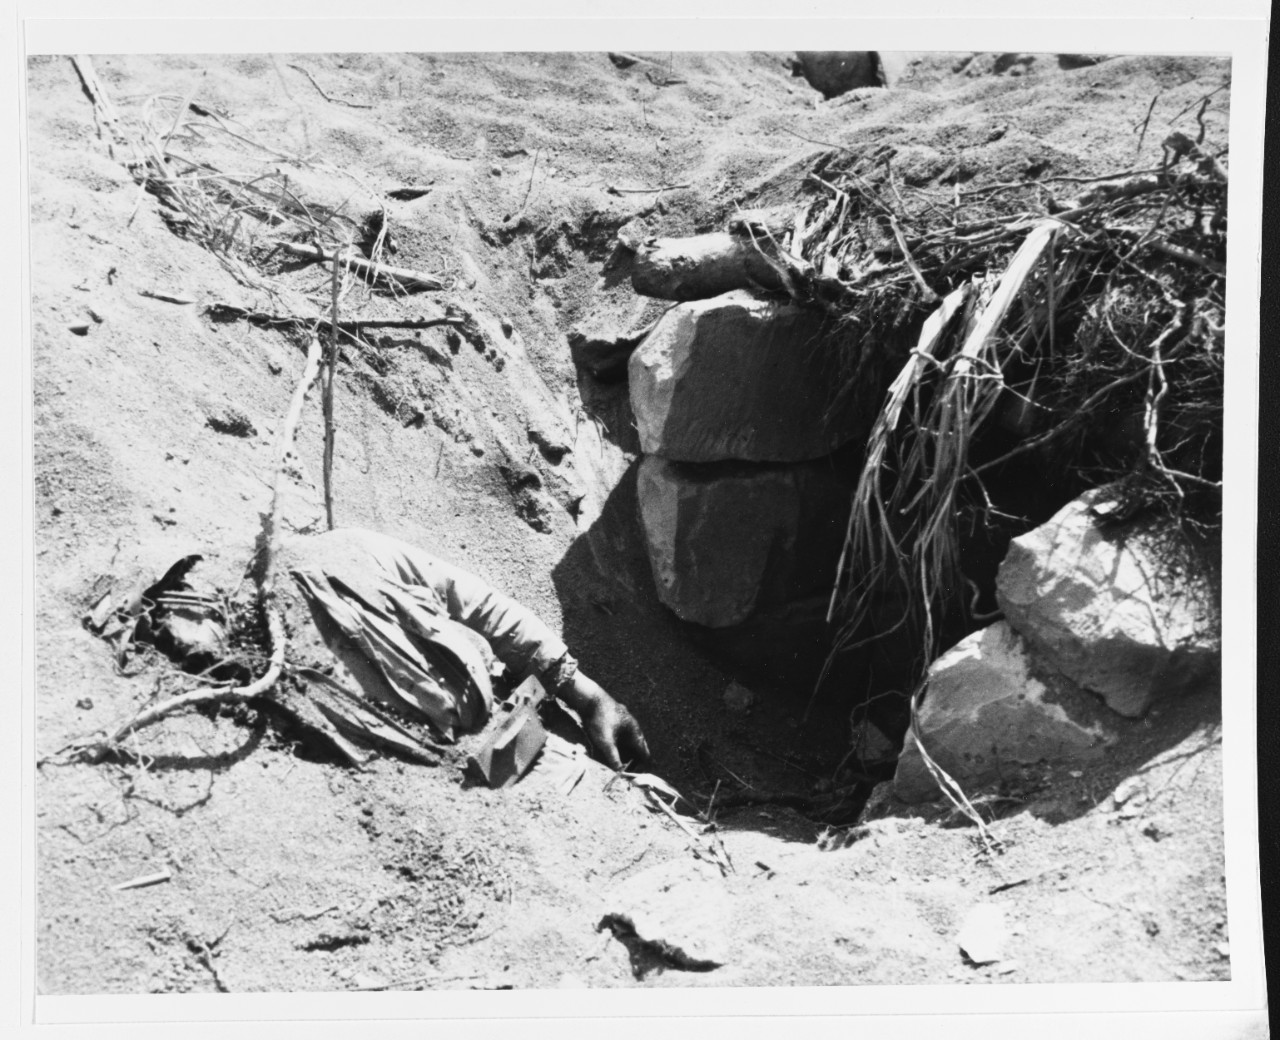 Iwo Jima Operation, 1945.